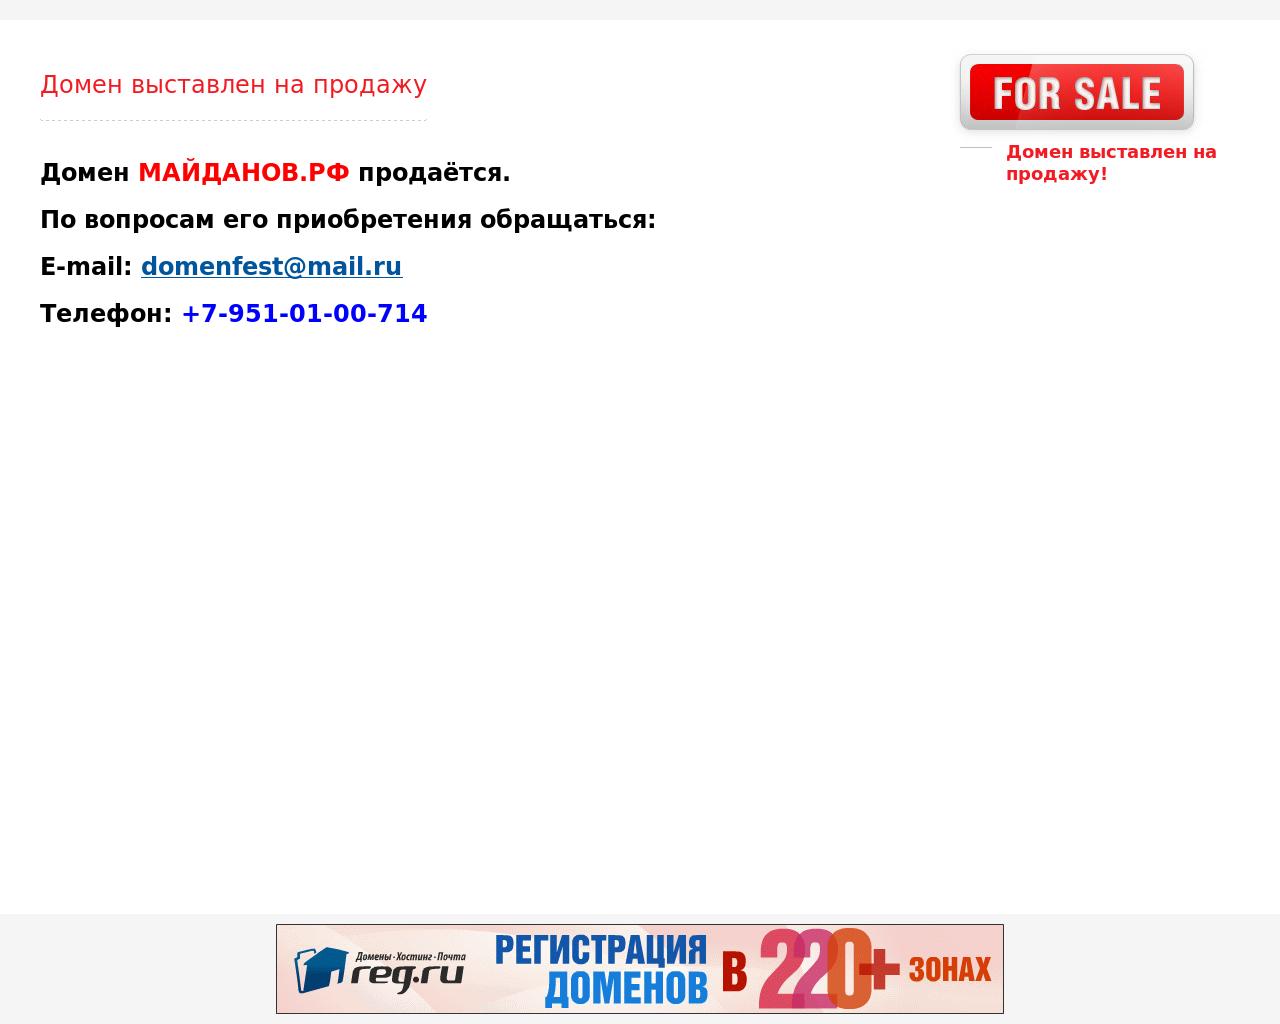 Изображение сайта майданов.рф в разрешении 1280x1024